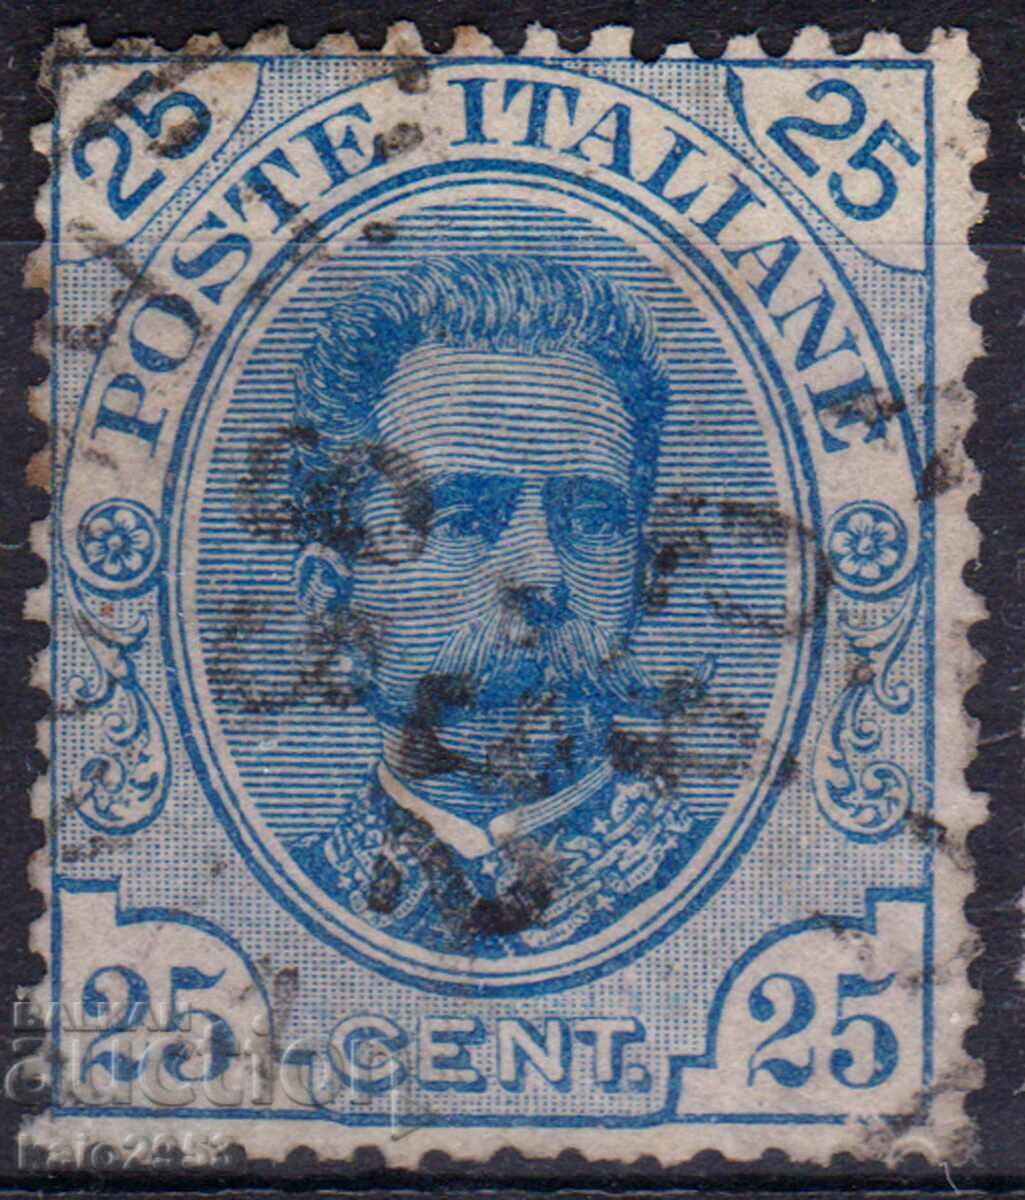 Regatul Italiei-1893-Obișnuit-Regele Umberto, timbru poștal